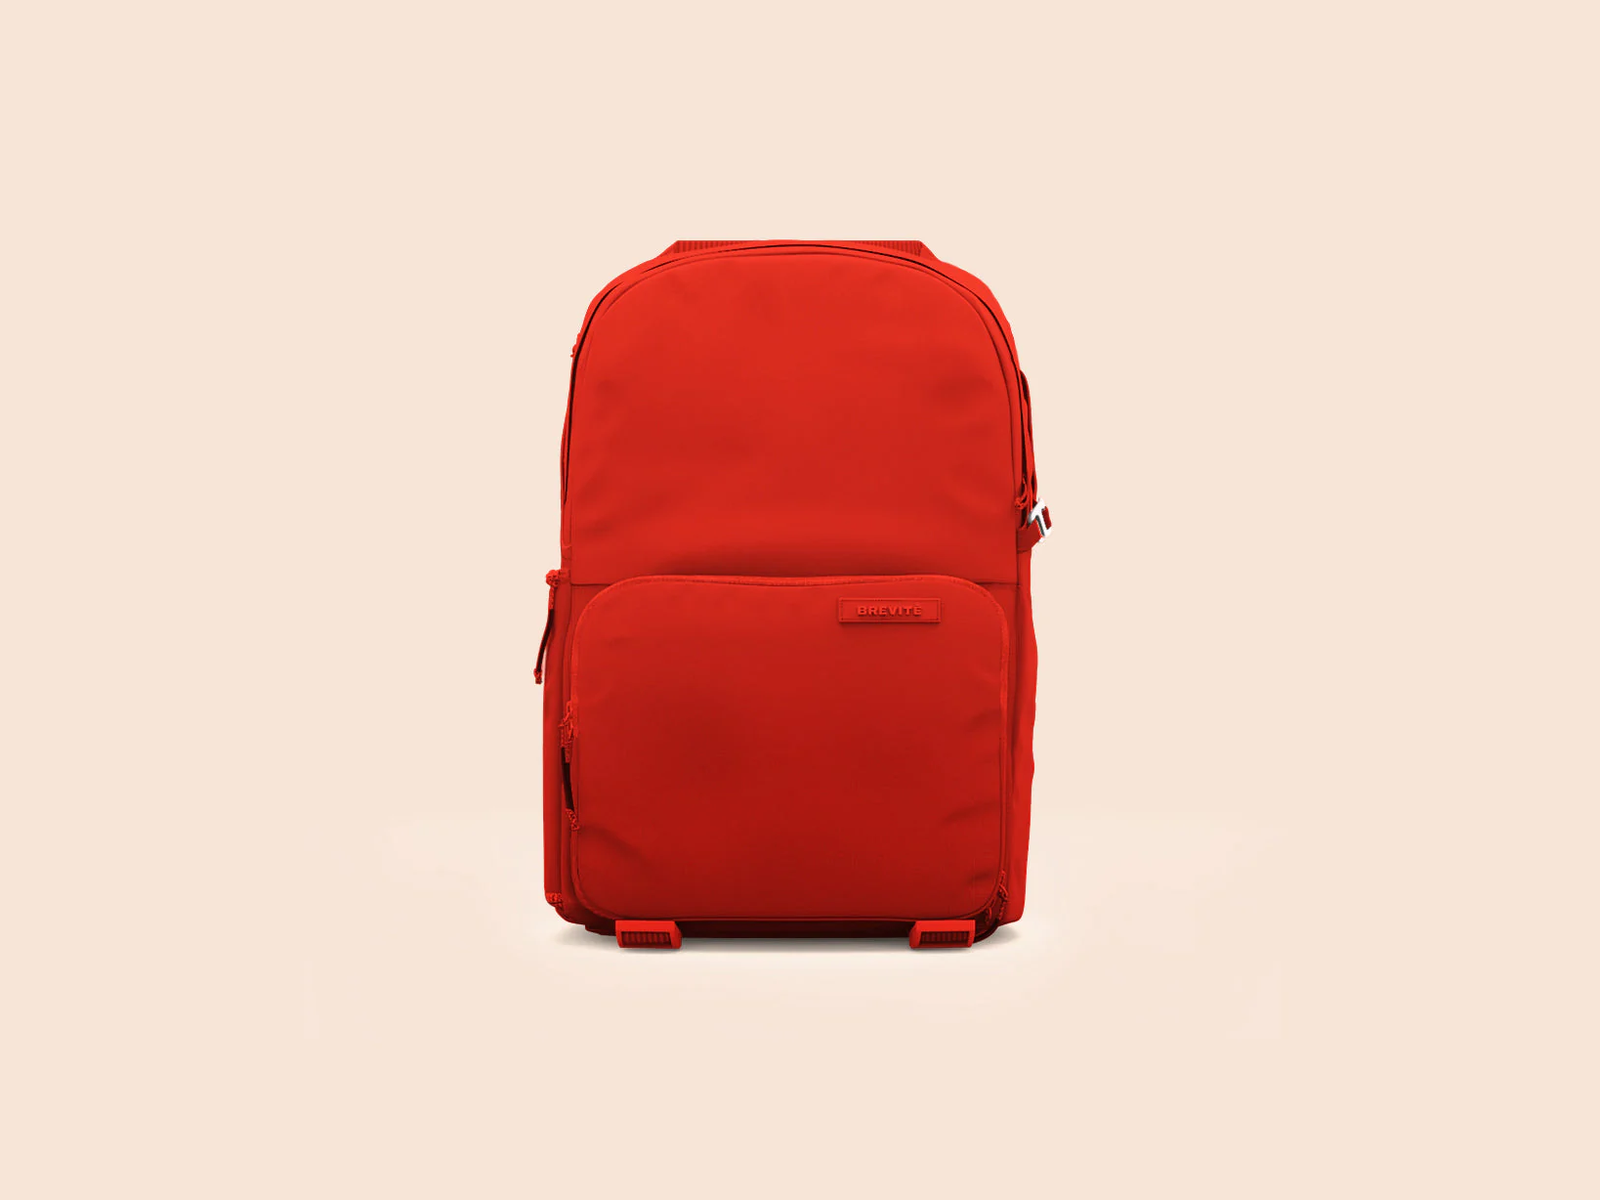 Brevite 'The Jumper' backpack